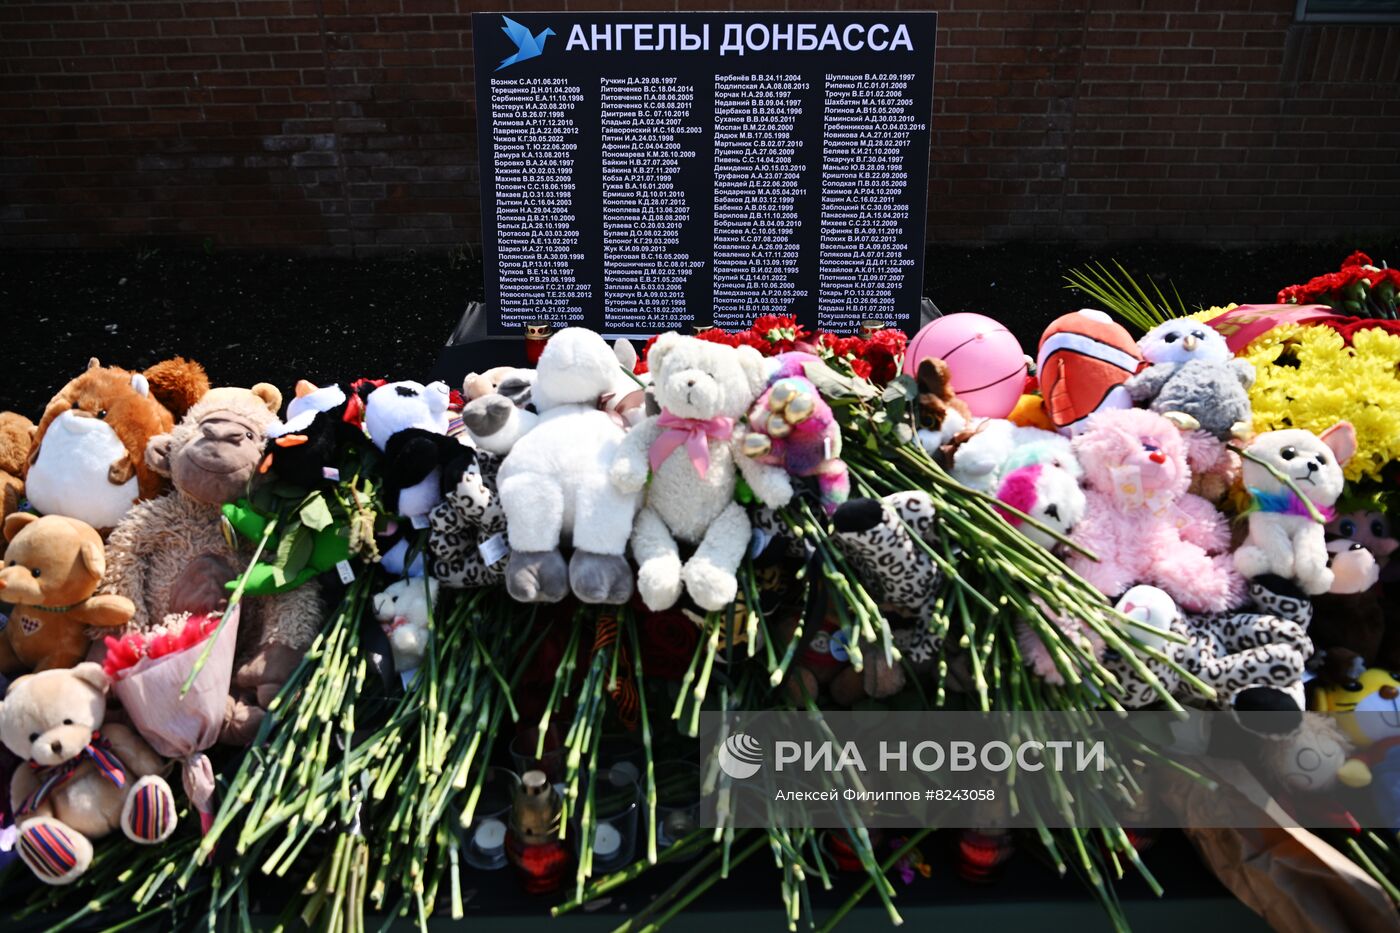 Стенд памяти о жертвах Донбасса на площади Донецкой Народной Республики